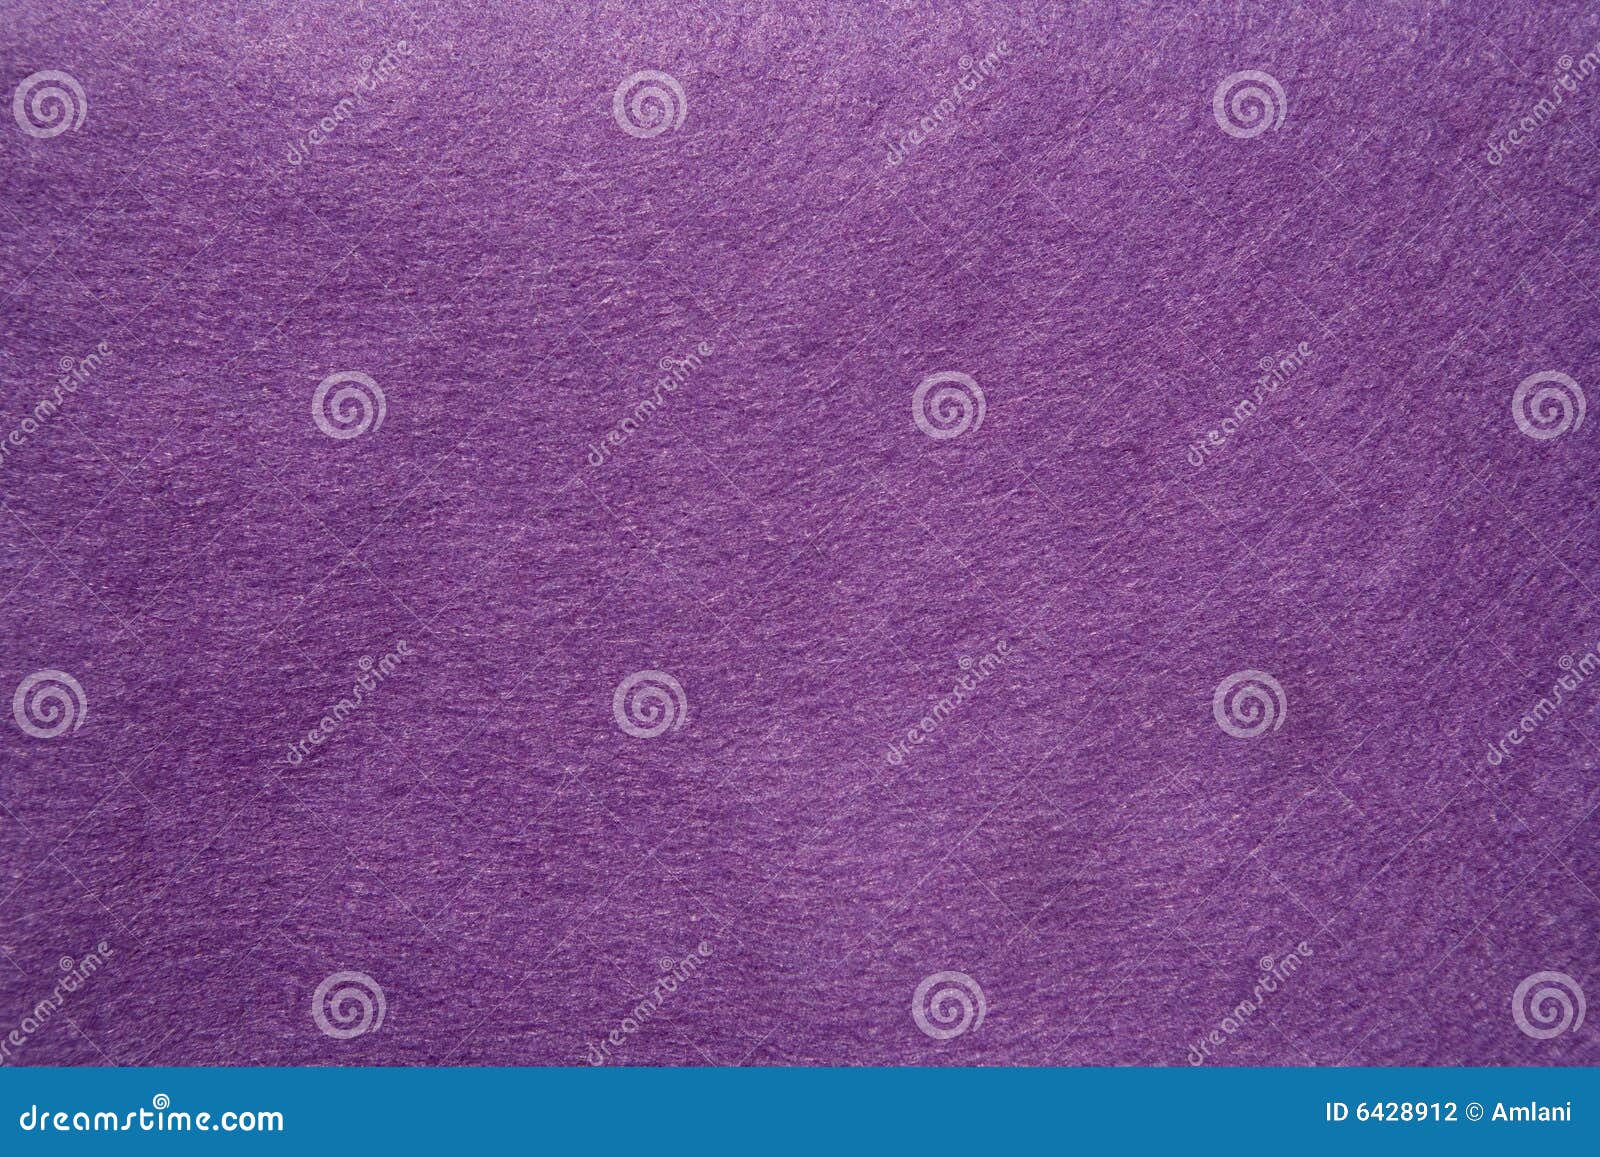 purple felt texture